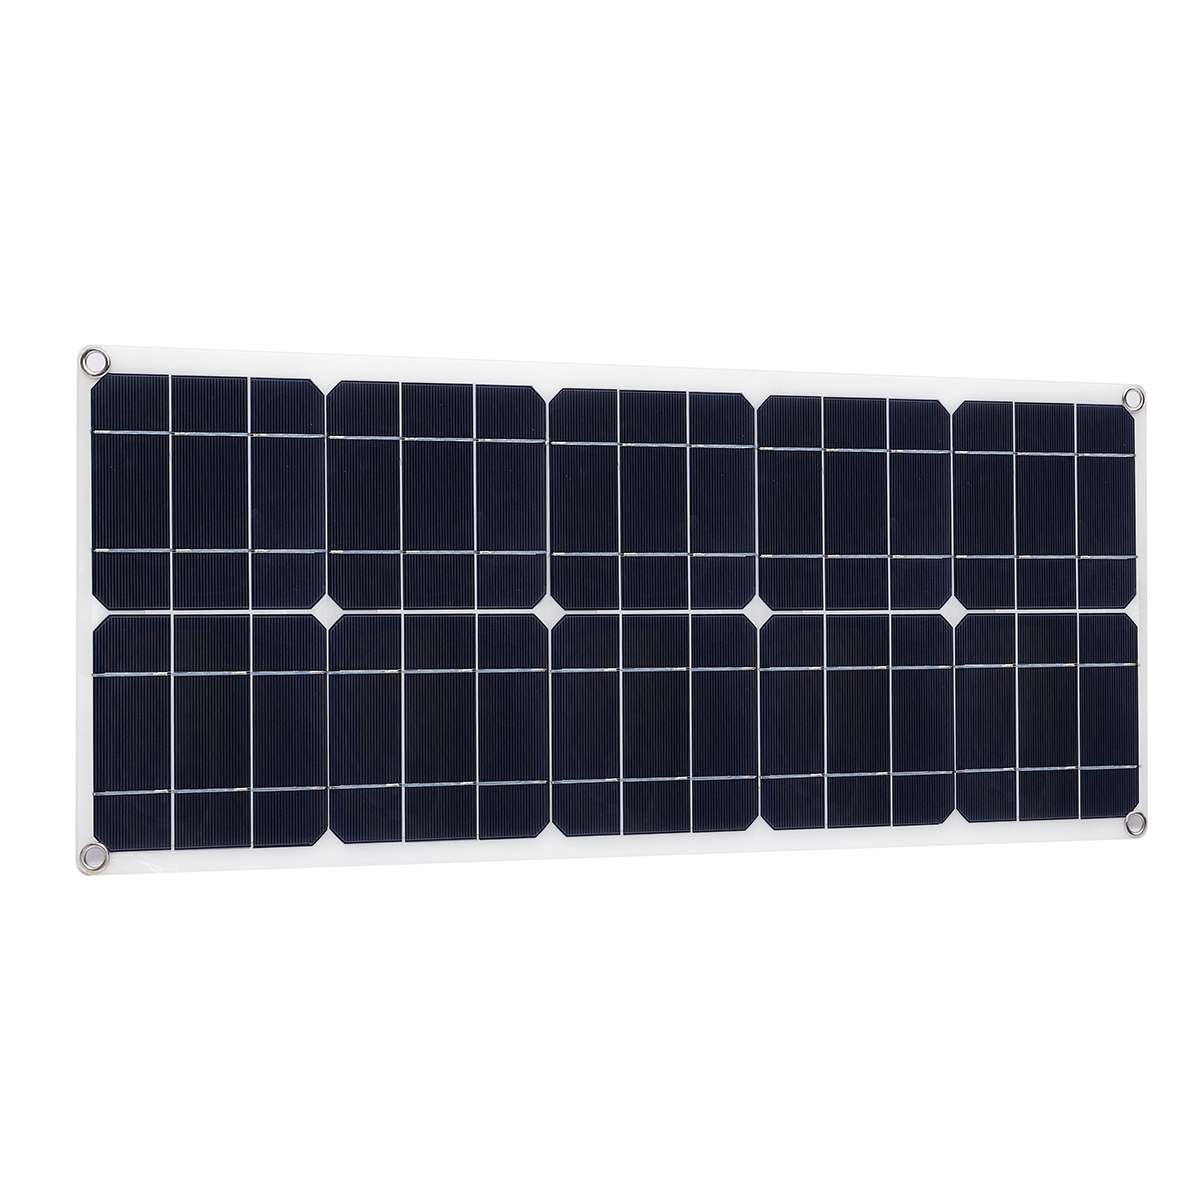 100w 12v 5v solcelleoplader solbatteri 10a controller monokrystallinsk alligator klip usb bil udendørs blysyrebatteri